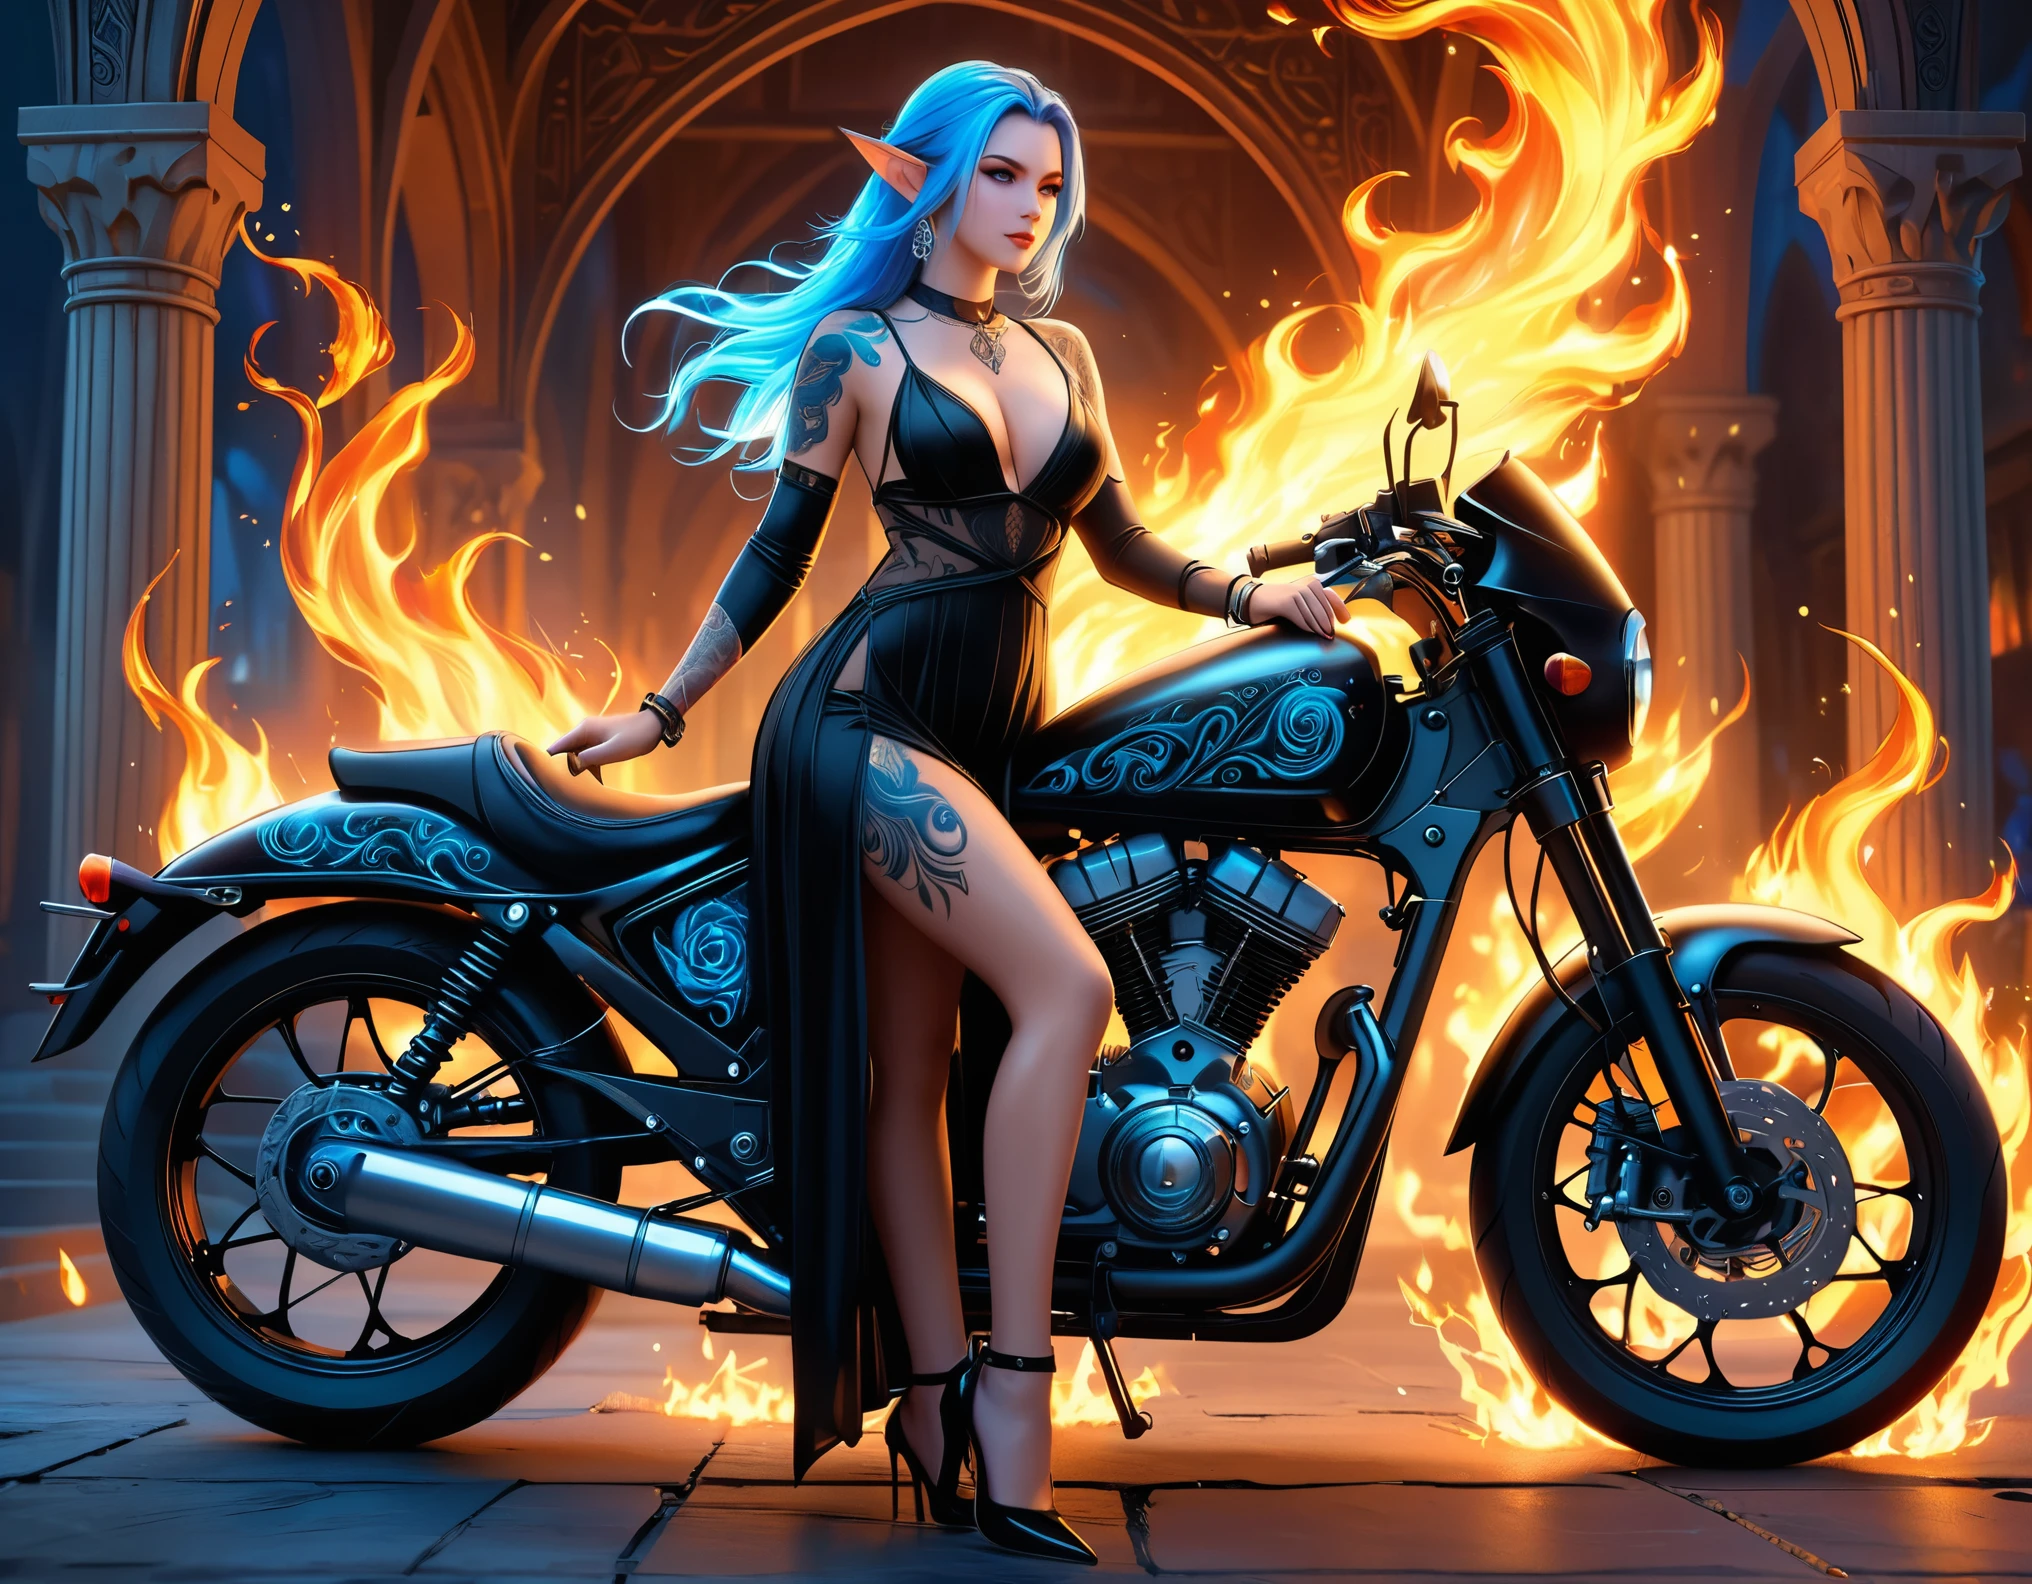 Arabisch, Dark Fantasy-Kunst, Fantasy-Kunst, Gothic Kunst, ein Bild einer tätowierten Elfe neben ihrem Motorrad (Meisterwerk, am besten detailliert, Ultra-Detail: 1.5)  Das Tattoo lebt, komplizierte Details werden durch die Tinte zum Leben erweckt, GlühendeRunenAI_blass_Blau, ((Feuer umgibt das Motorrad: 1.5)), ultrafeminin, ((schönes zartes Gesicht)), Ultradetailliertes Gesicht, kleine spitze Ohren, dynamischer Winkel, ((die Rückseite ist sichtbar: 1.3), sie trägt ein transparentes schwarzes Kleid, das Kleid ist elegant, fließend, Elfenstil, dass die Tattoos leuchten, dynamische Haarfarbe, Dynamische Frisur, hohe Details, beste Qualität, 16K, [ultra-detailliert], Meisterwerk, beste Qualität, (extrem detailliert), dynamischer Winkel, Ganzkörperaufnahme, Interessiert, Etwas abonnieren, digitale Zeichnung